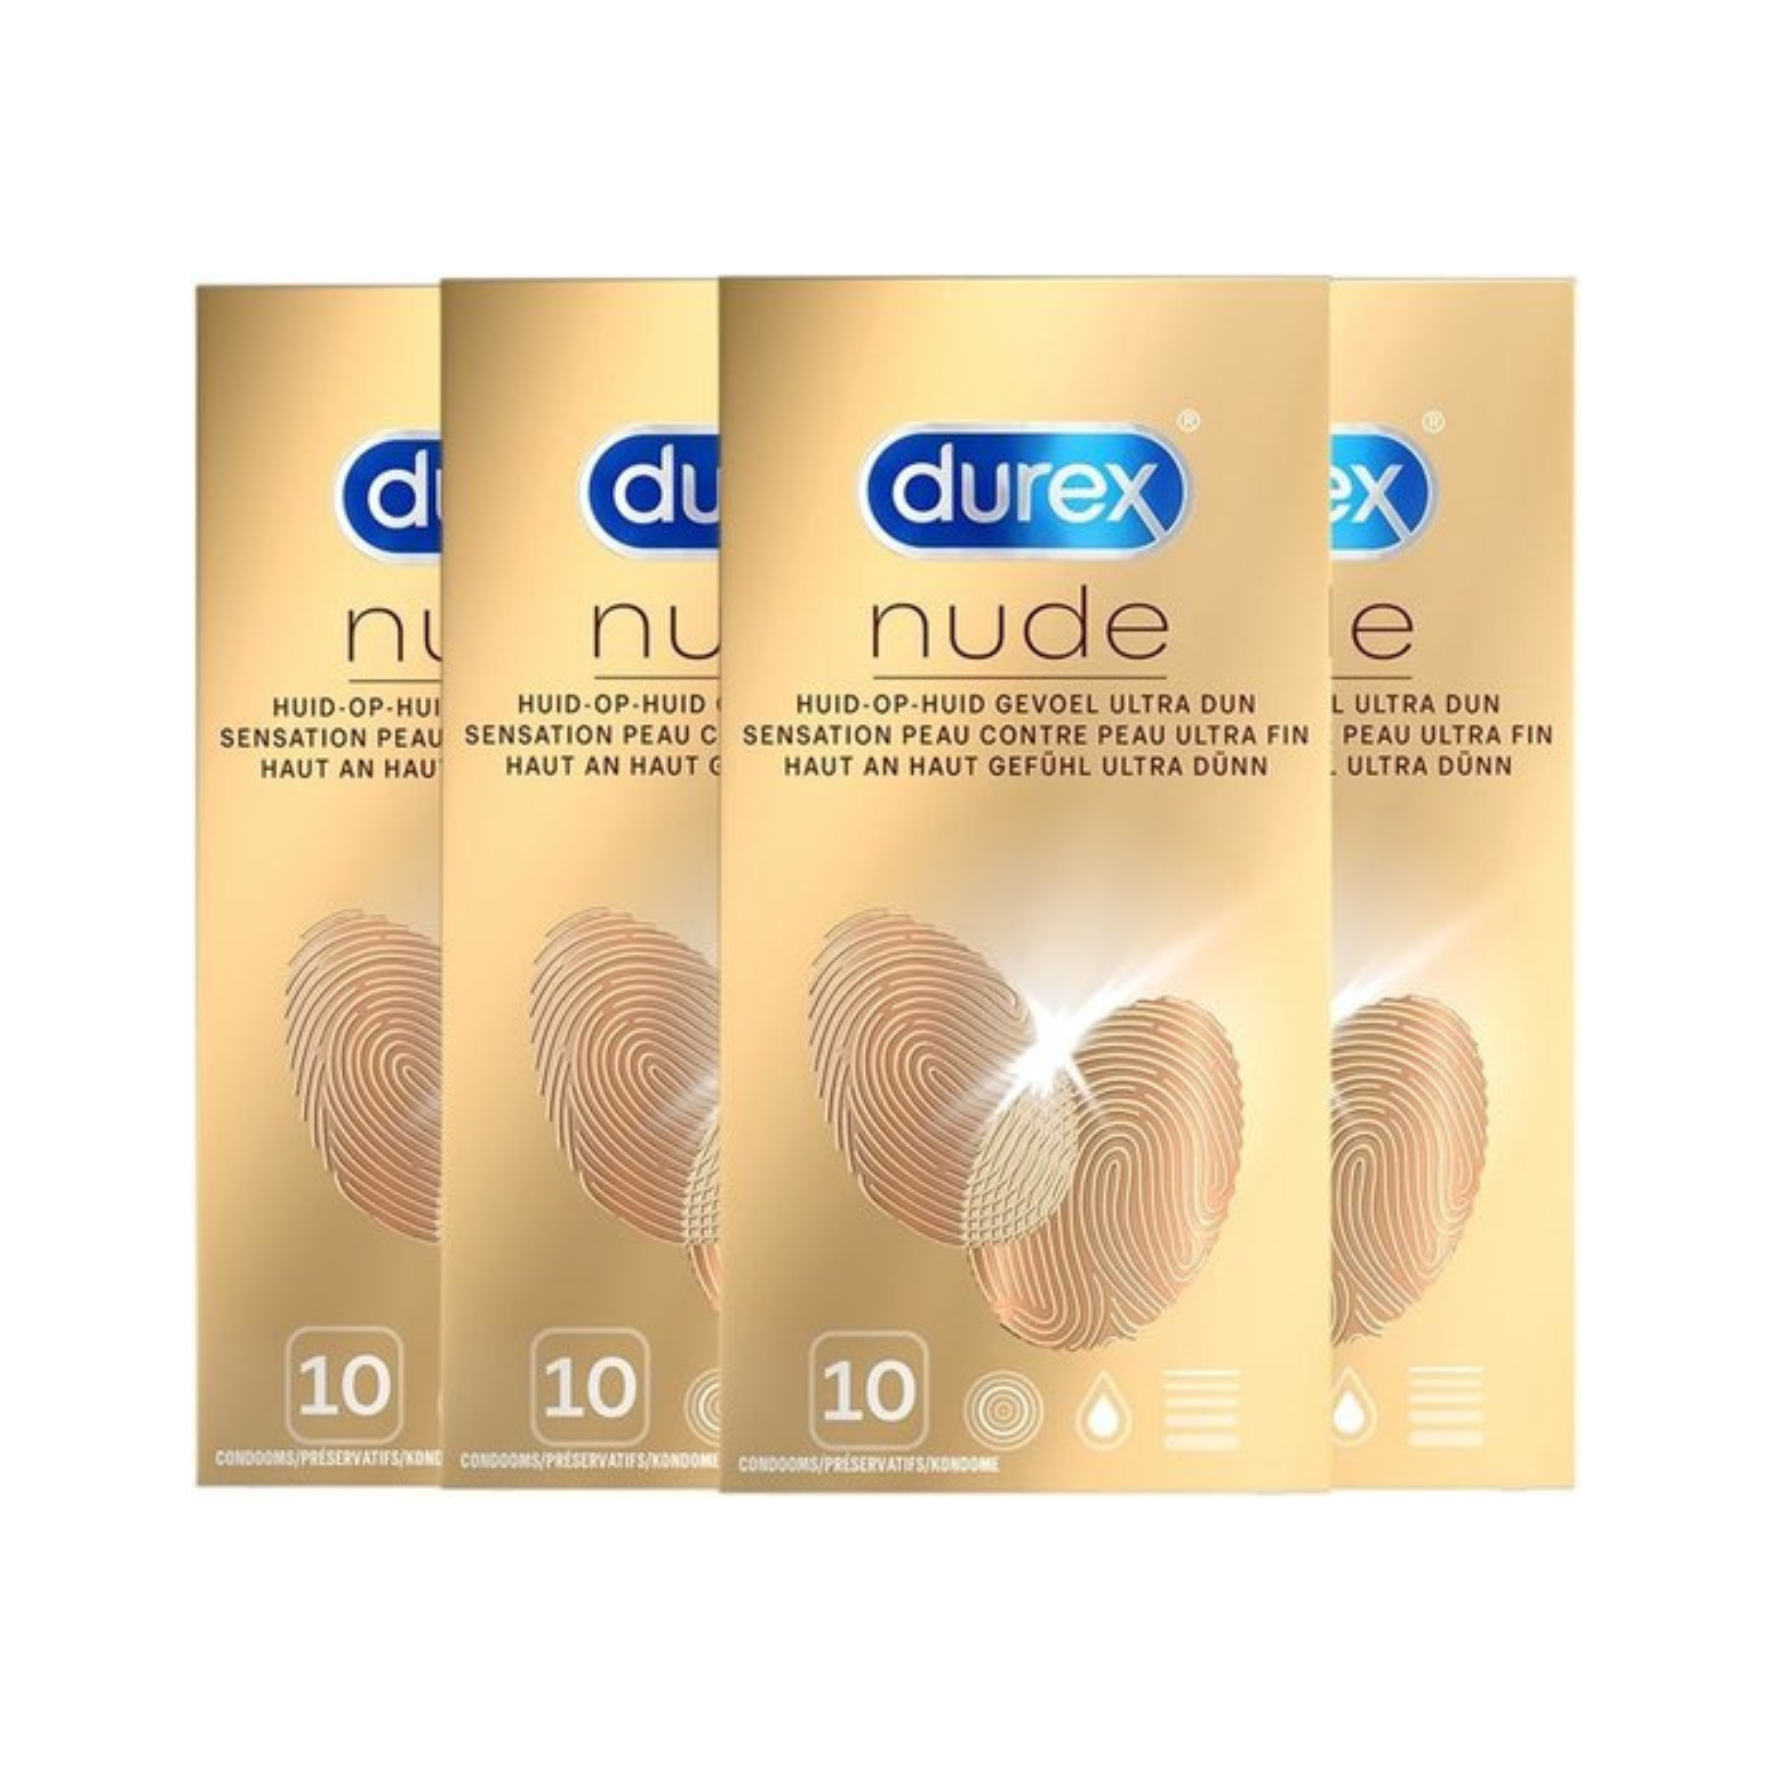 NATŪRALAUS POJŪČIO PREZERVATYVAI "DUREX NUDE" - 10 VNT.  
"Durex Nude" -  natūralesnį, odą primenantį pojūtį primenantys  prezervatyvai leidžia mėgautis tikresniu ir jautresniu seksu. 
Šie skaidrūs prezervatyvai yra  itin ploni bei sutepti silikono pagrindo lubrikantu.  
Taip pat jie  turi rezervuarą spermai ir yra lengvai uždedami bei nuimami.  
Prieš užsidėdami prezervatyvą įsitikinkite, kad jūsų varpa neliečia partnerio lytinių organų srities – sperma iš varpos gali išeiti dar prieš pilną ejakuliaciją.   
*Atminkite, kad nė viena kontraceptinė priemonė nėra 100 % veiksminga nuo nėštumo, ŽIV ar lytiškai plintančių infekcijų.